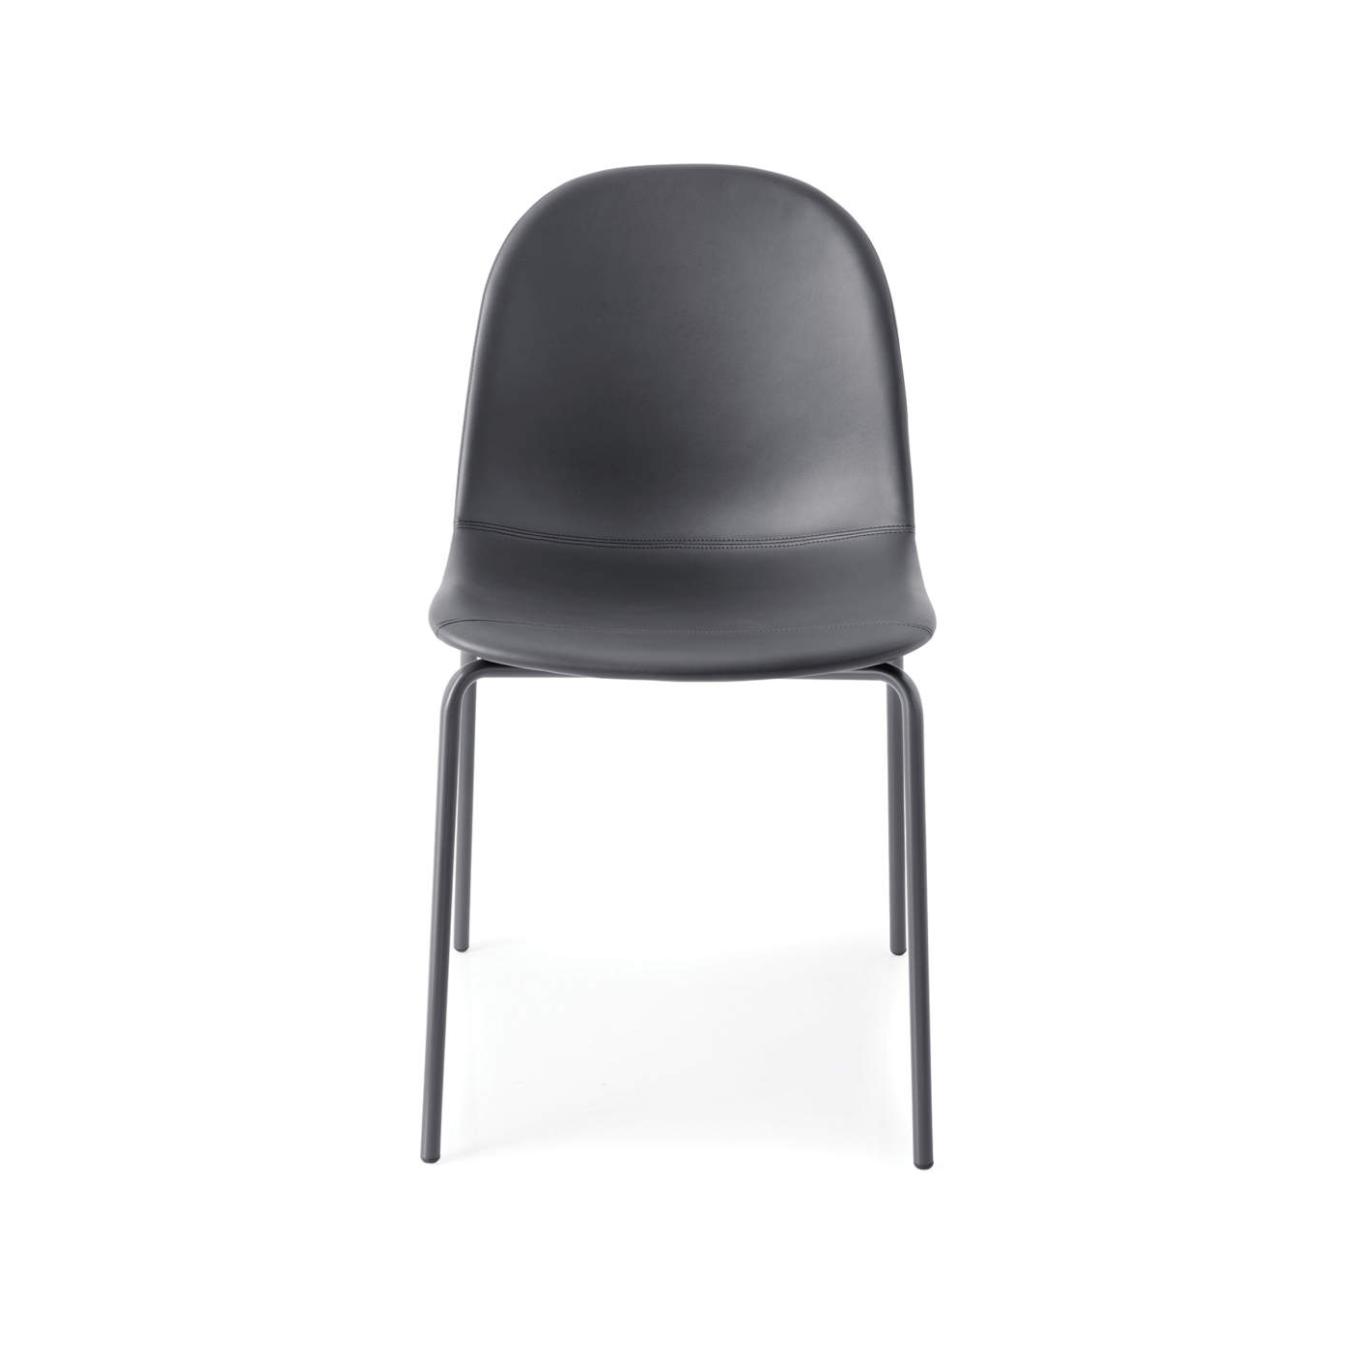 Connubia Academy upholstered dining chair // Academy kárpitozott étkezőszék